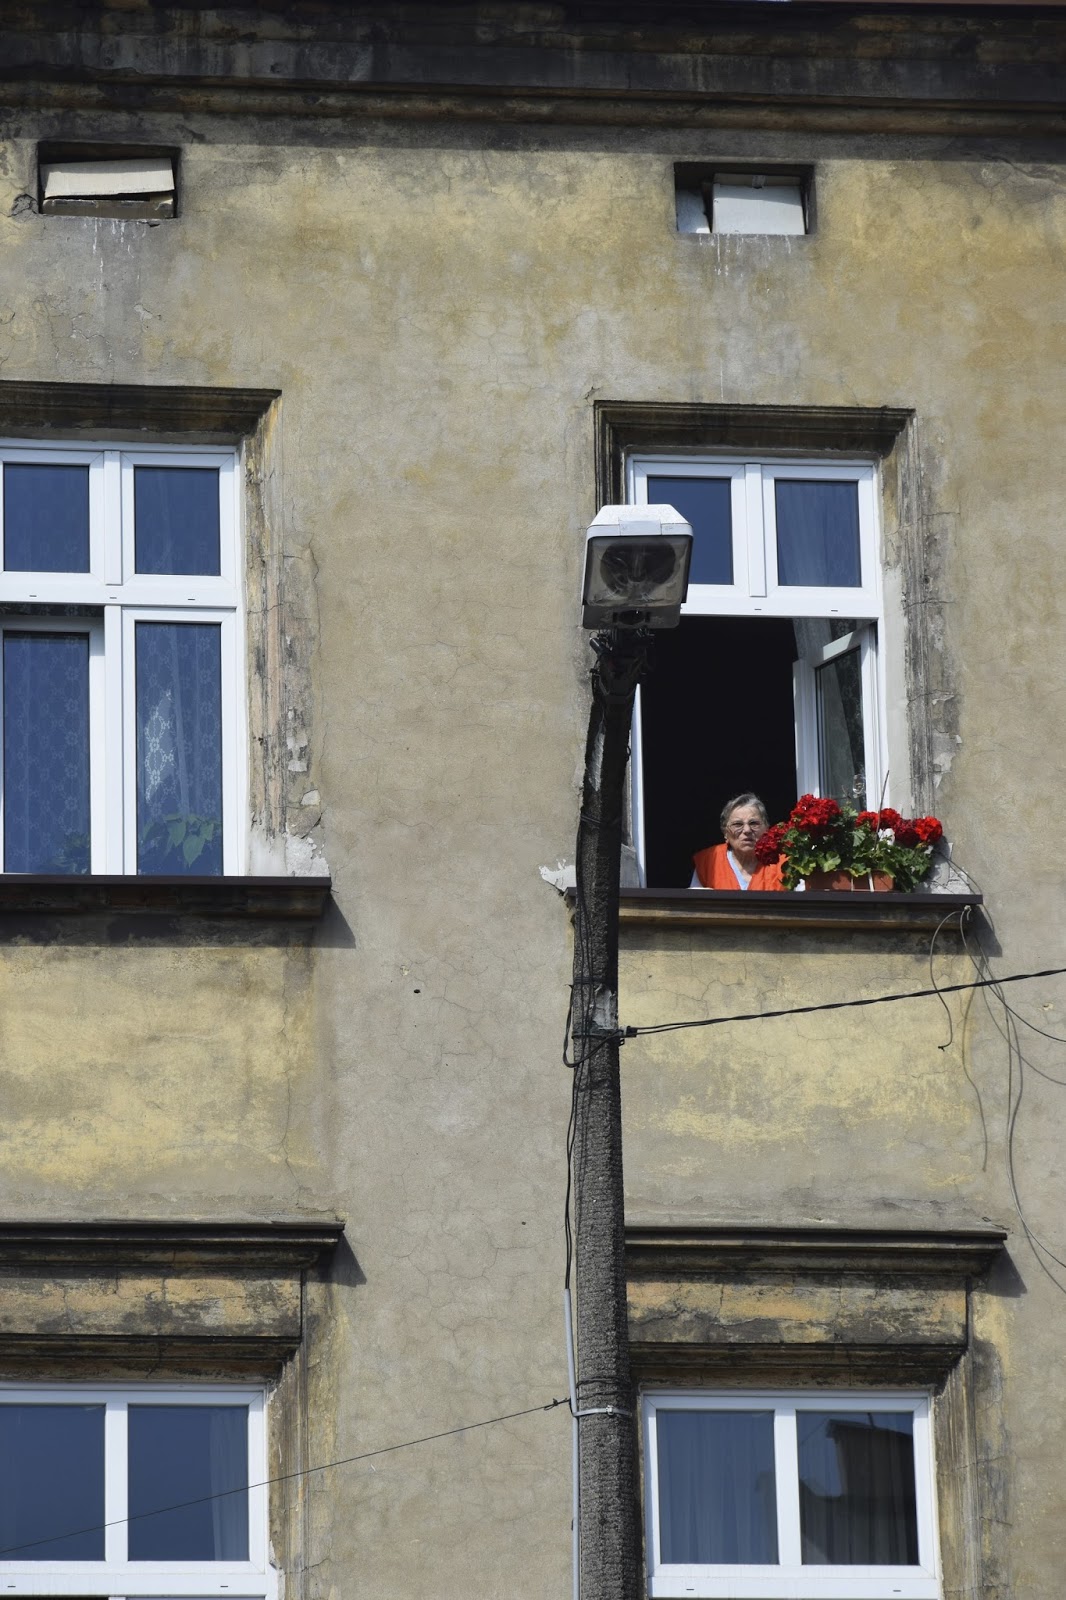 Woman at window, Kazimierz, Poland